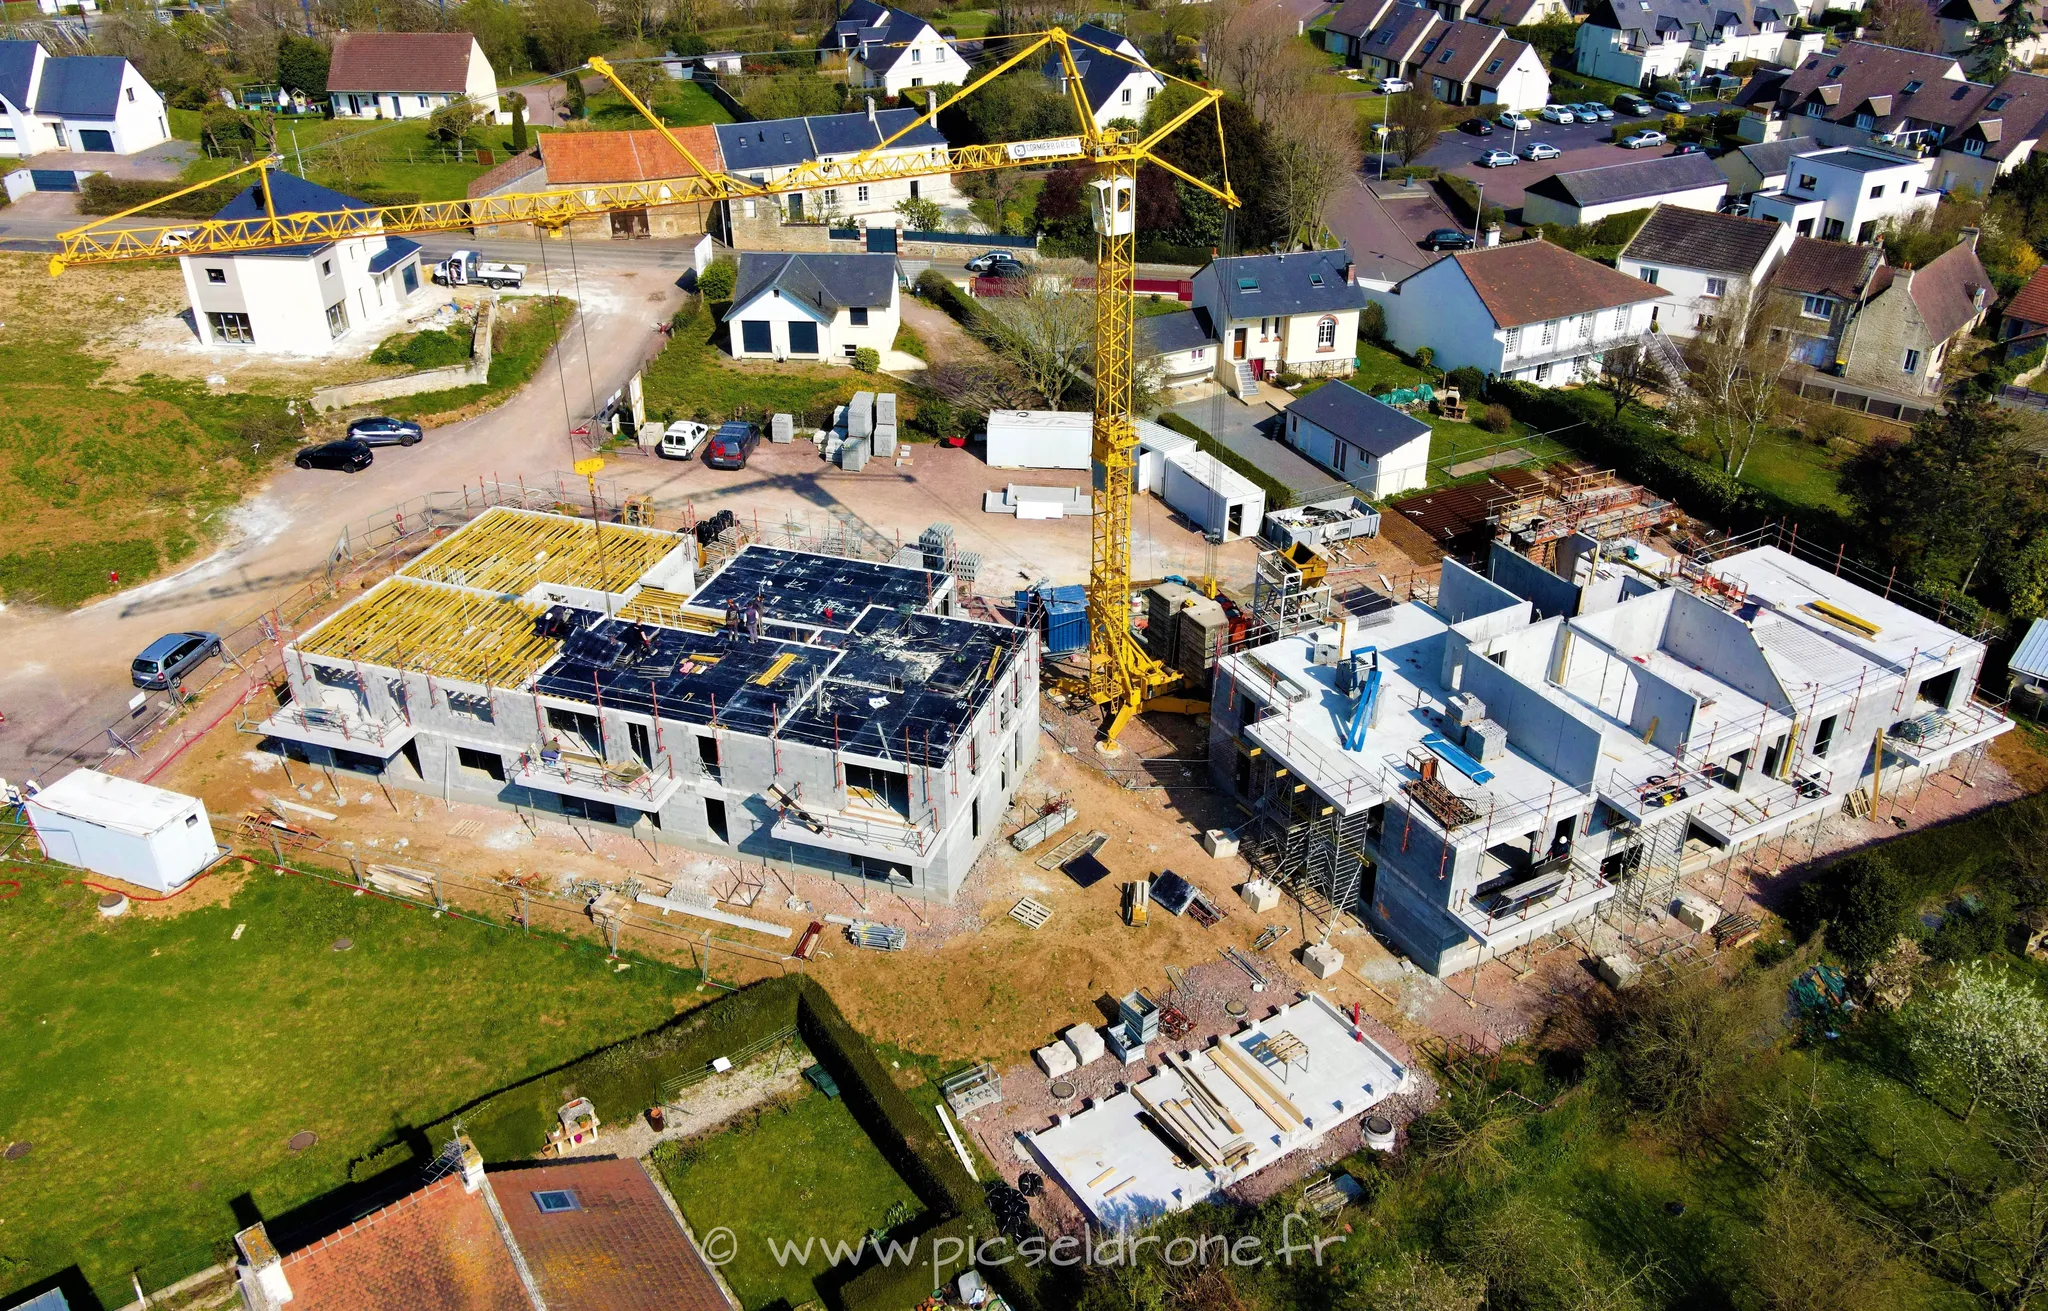 Prise de vue aérienne, photo aérienne de chantier CORMIER BARÉA, VIABILIS, Villa Verde Verson, télépilote drone, pilote drone, PICSEL DRONE, CAEN